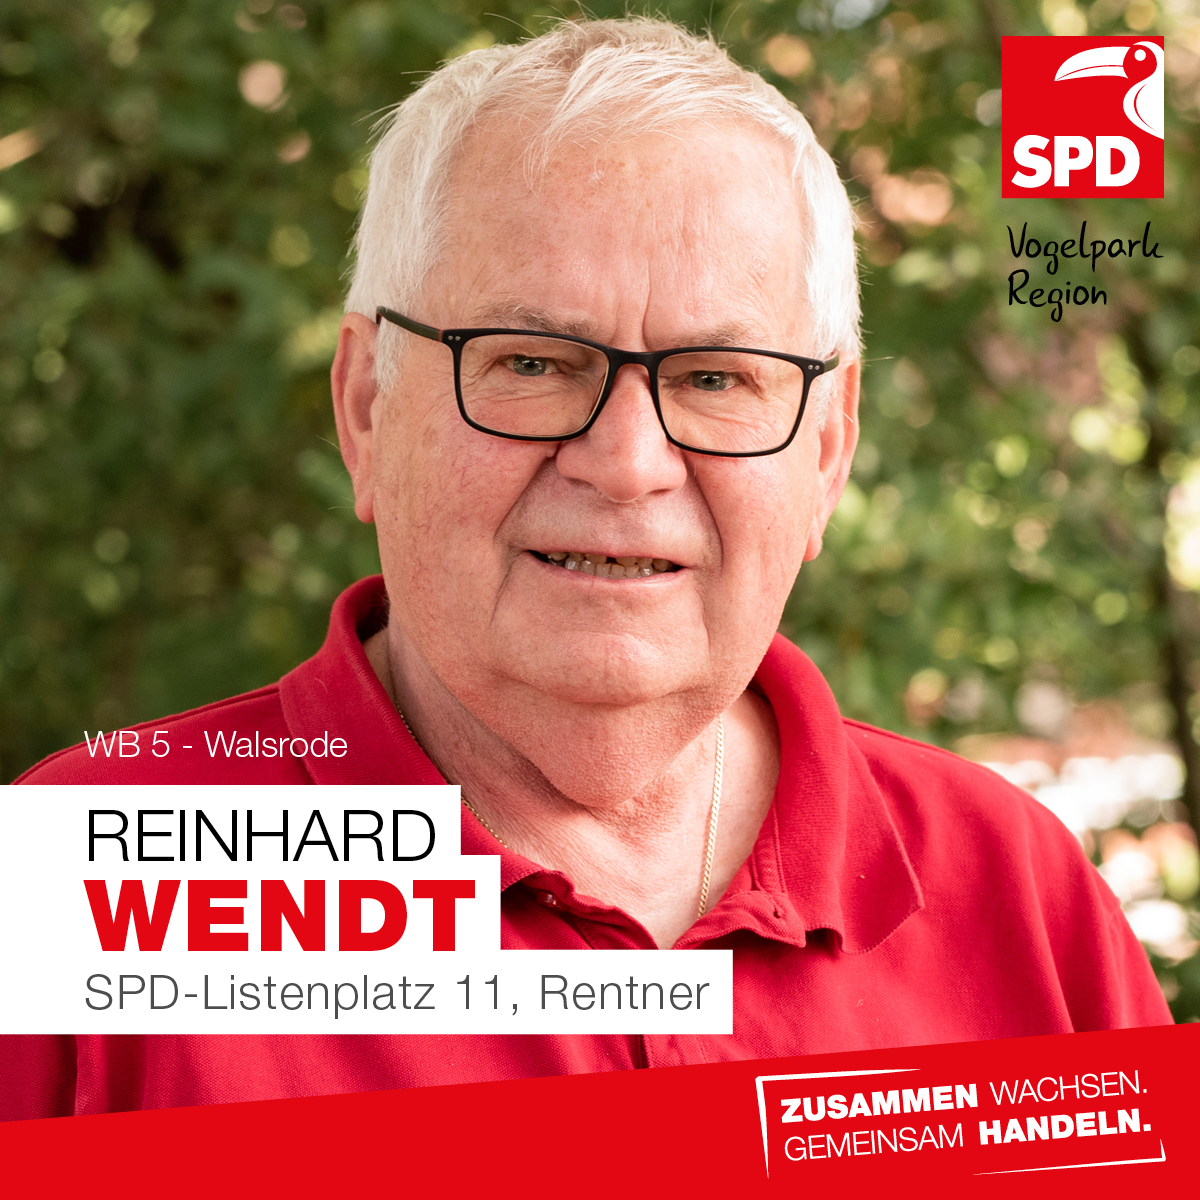 Reinhard Wendt